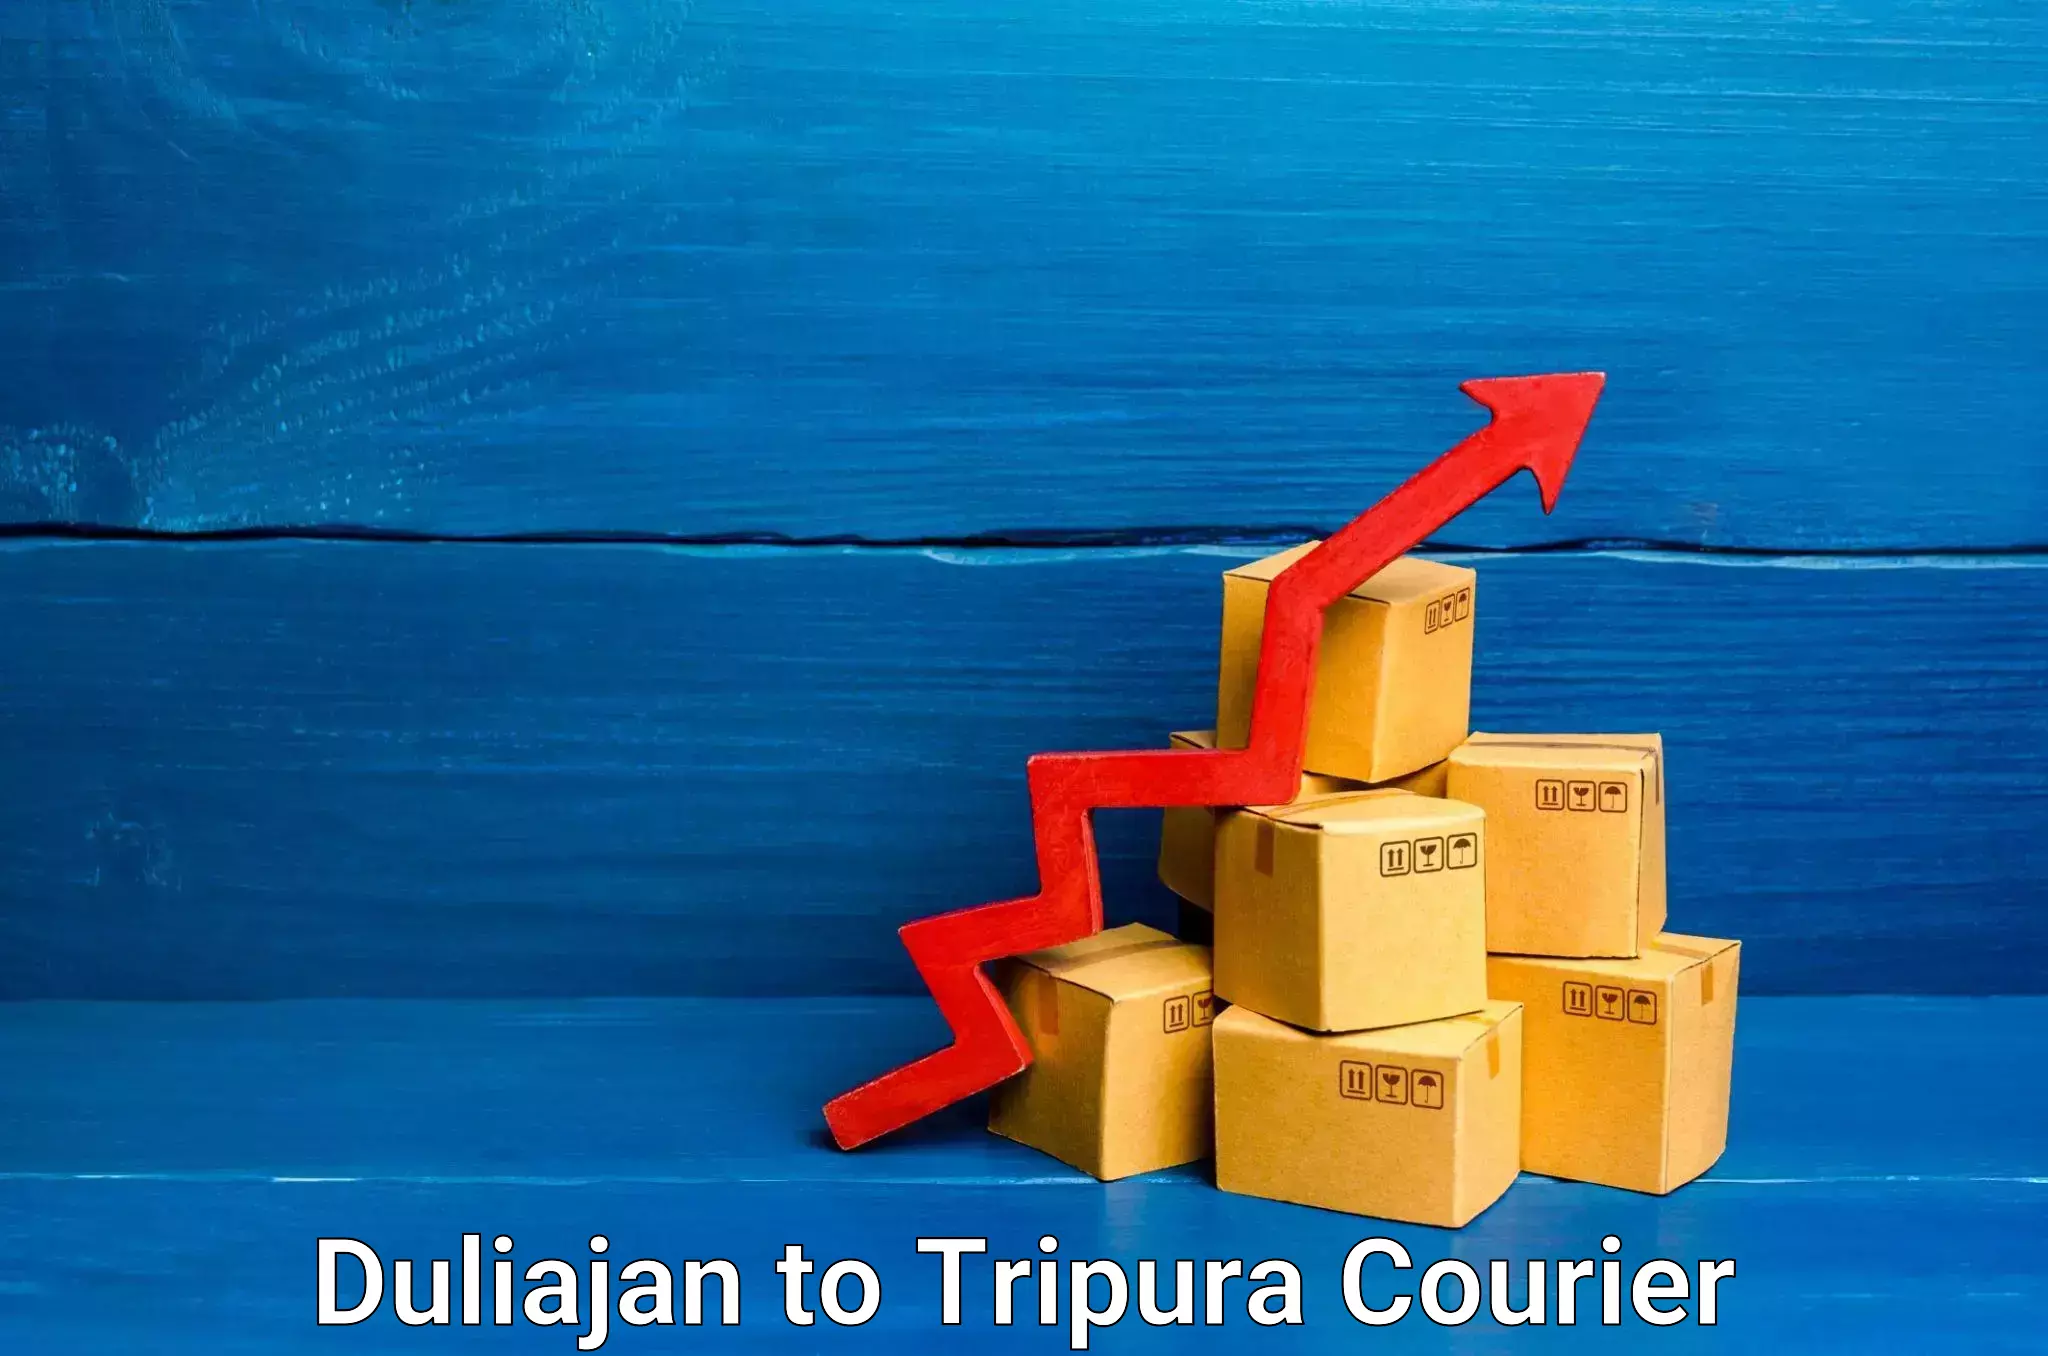 Express package handling Duliajan to Tripura